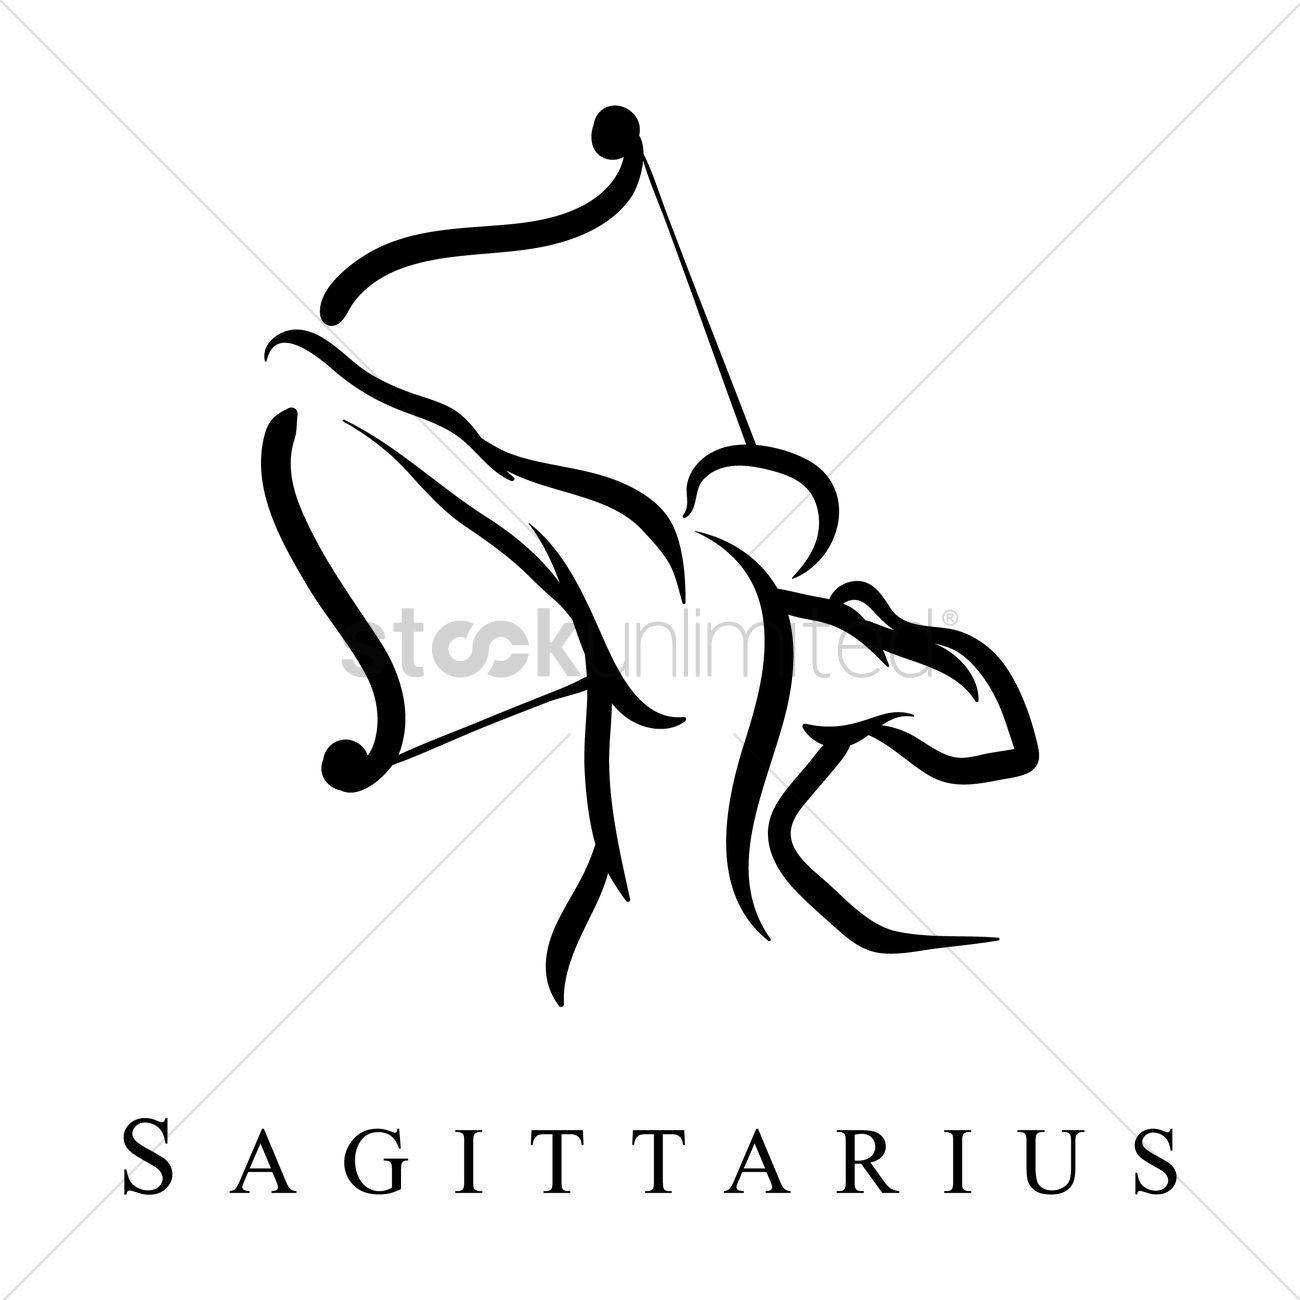 Sagittarius товарный знак